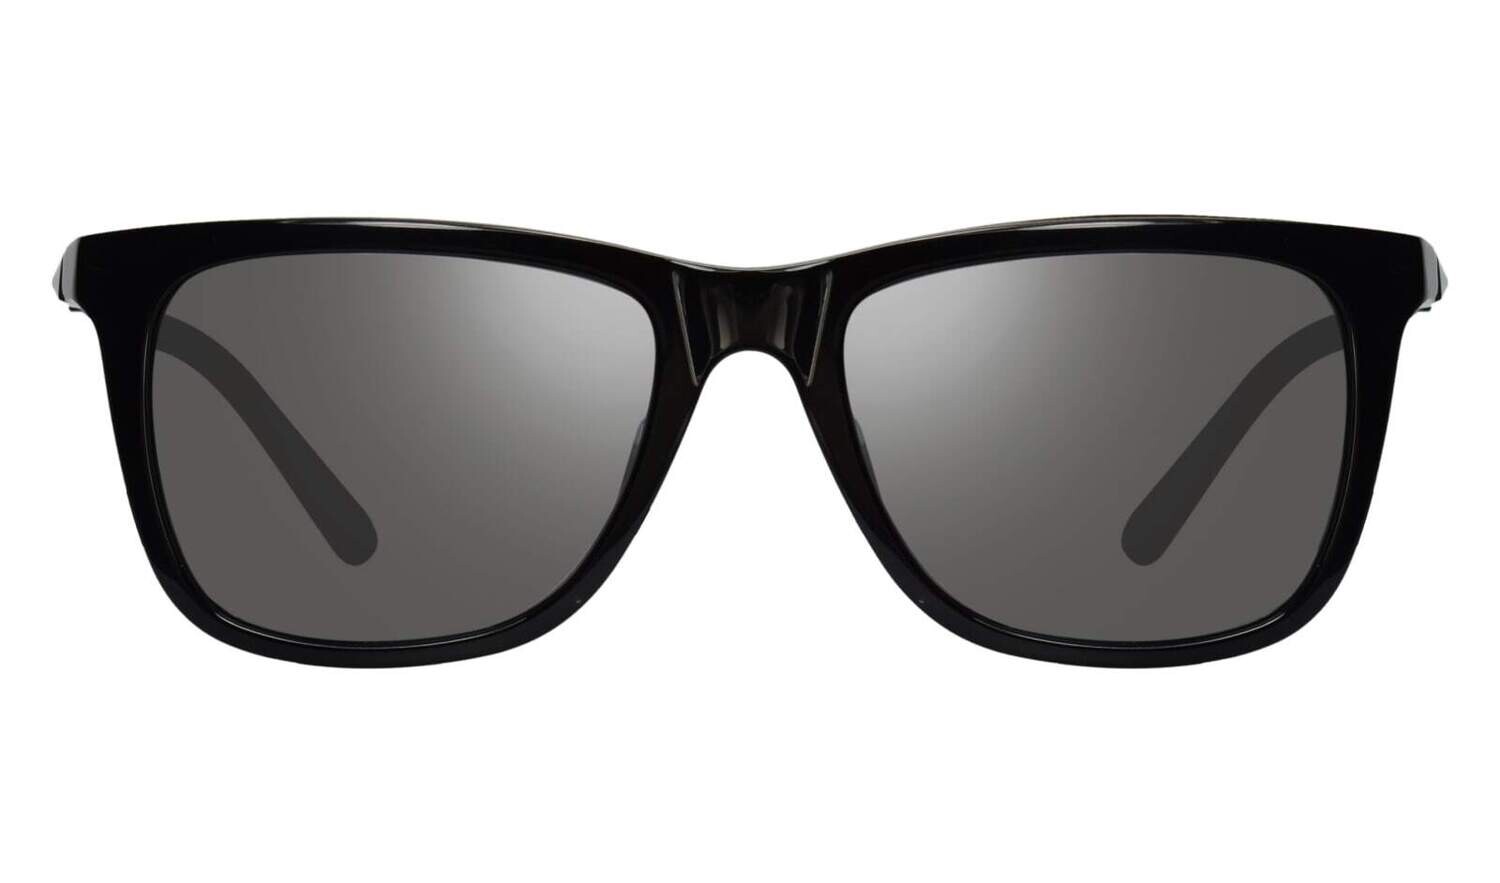 REVO X JEEP COVE JS 1164 01GY black / grey polarized occhiali